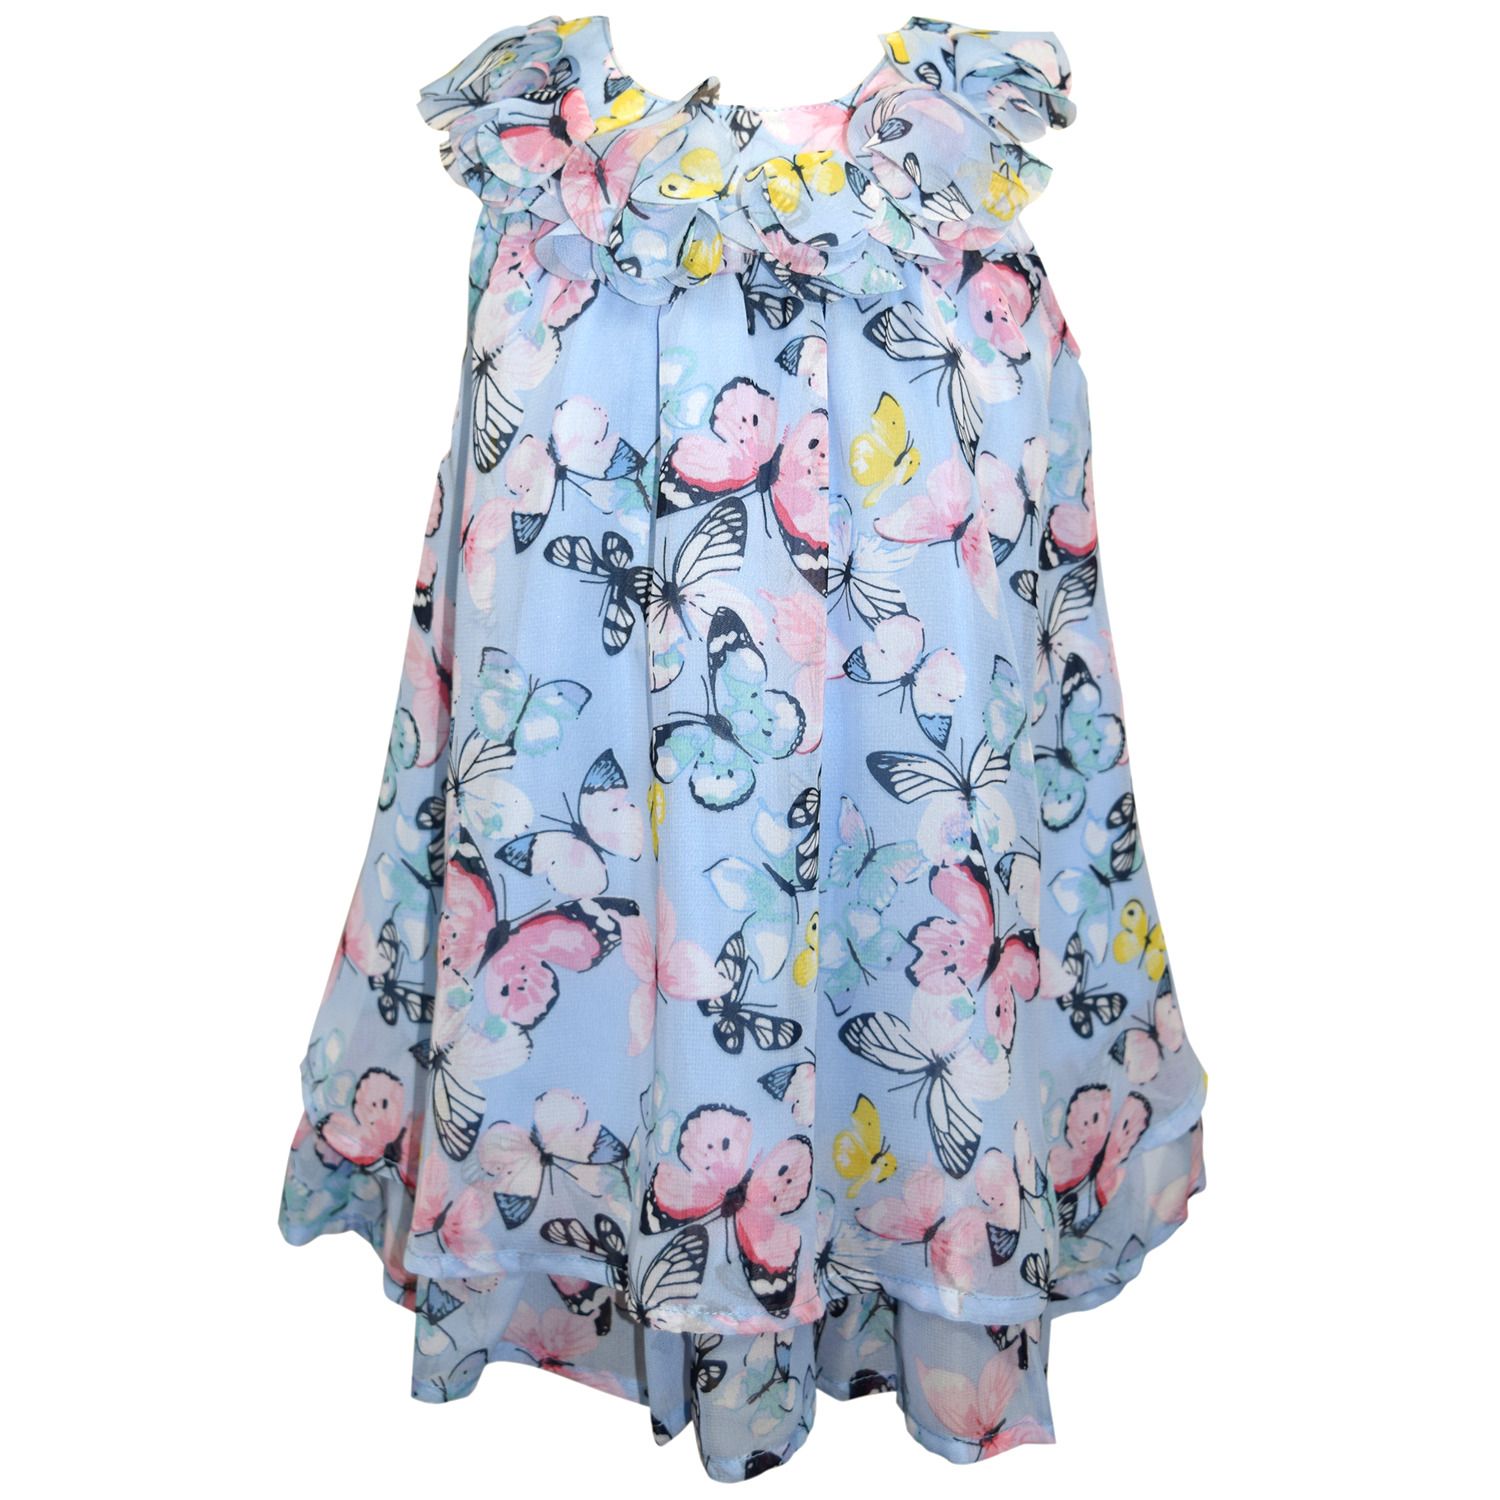 chiffon dress for little girl